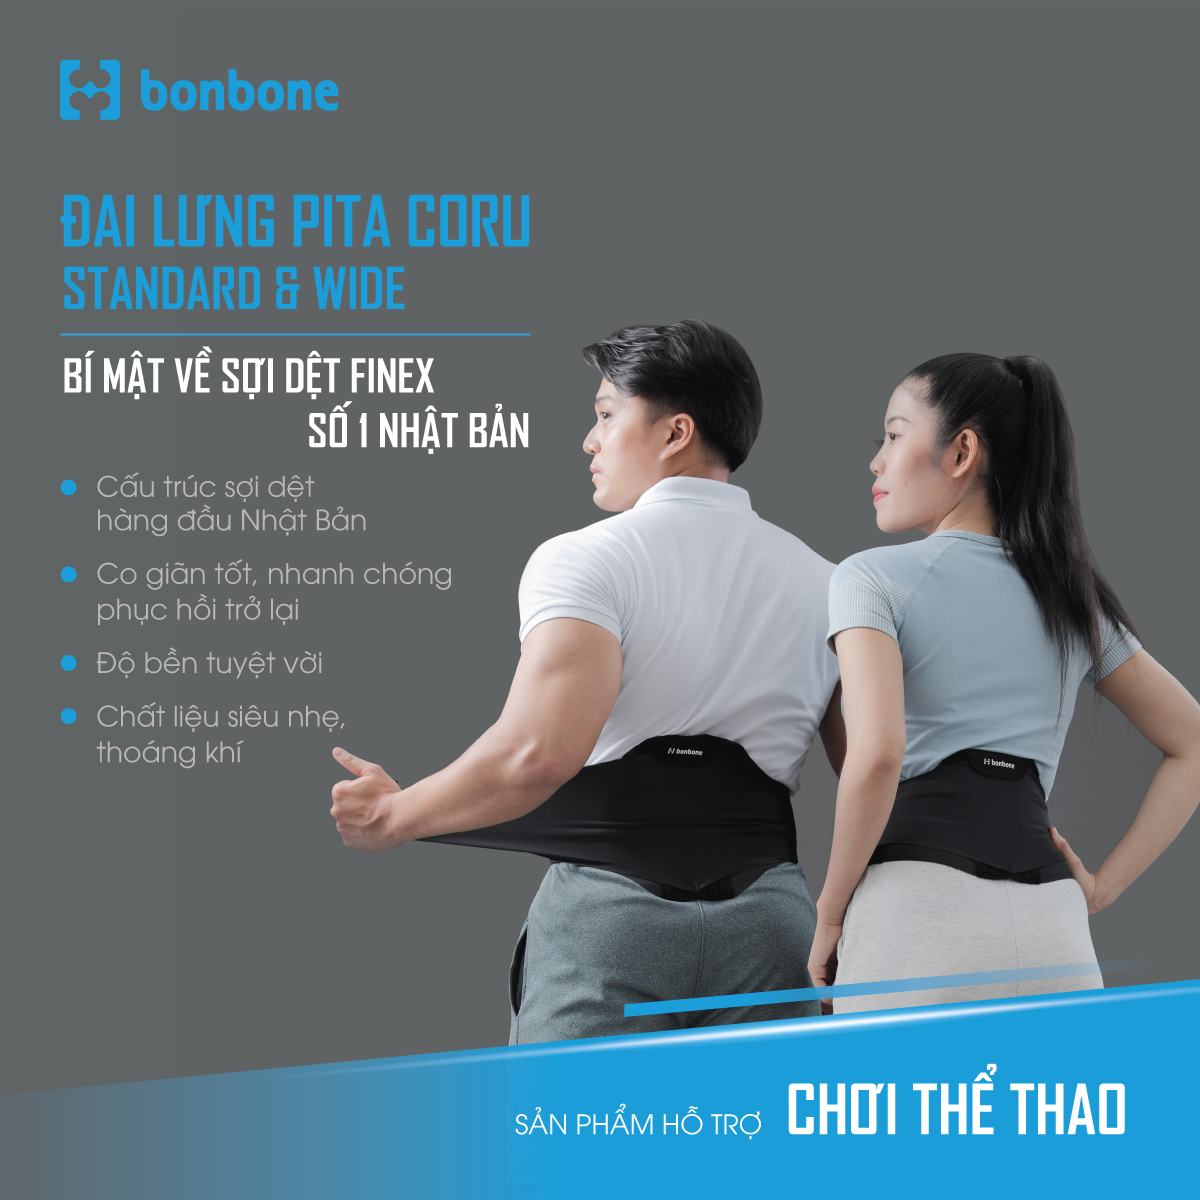 Đai lưng Pita Coru với chất liệu cao cấp đến từ Nhật Bản - giúp mang lại cảm giác thoáng khí và hỗ trợ cải thiện vùng lưng 